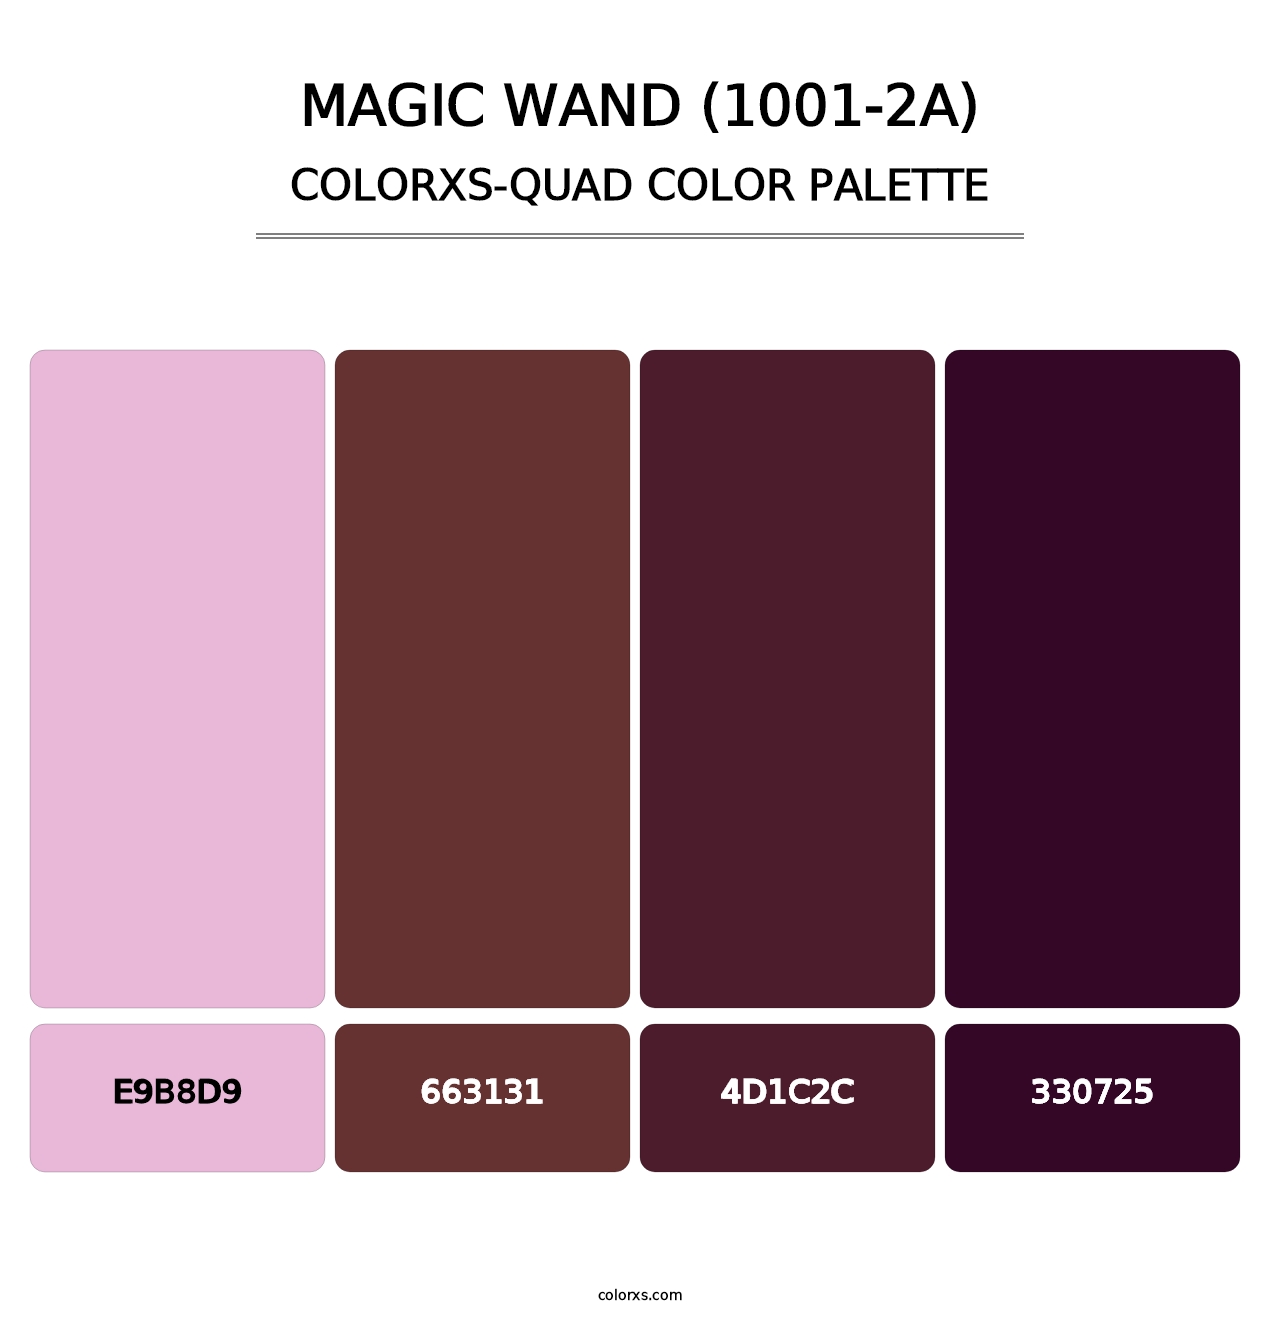 Magic Wand (1001-2A) - Colorxs Quad Palette